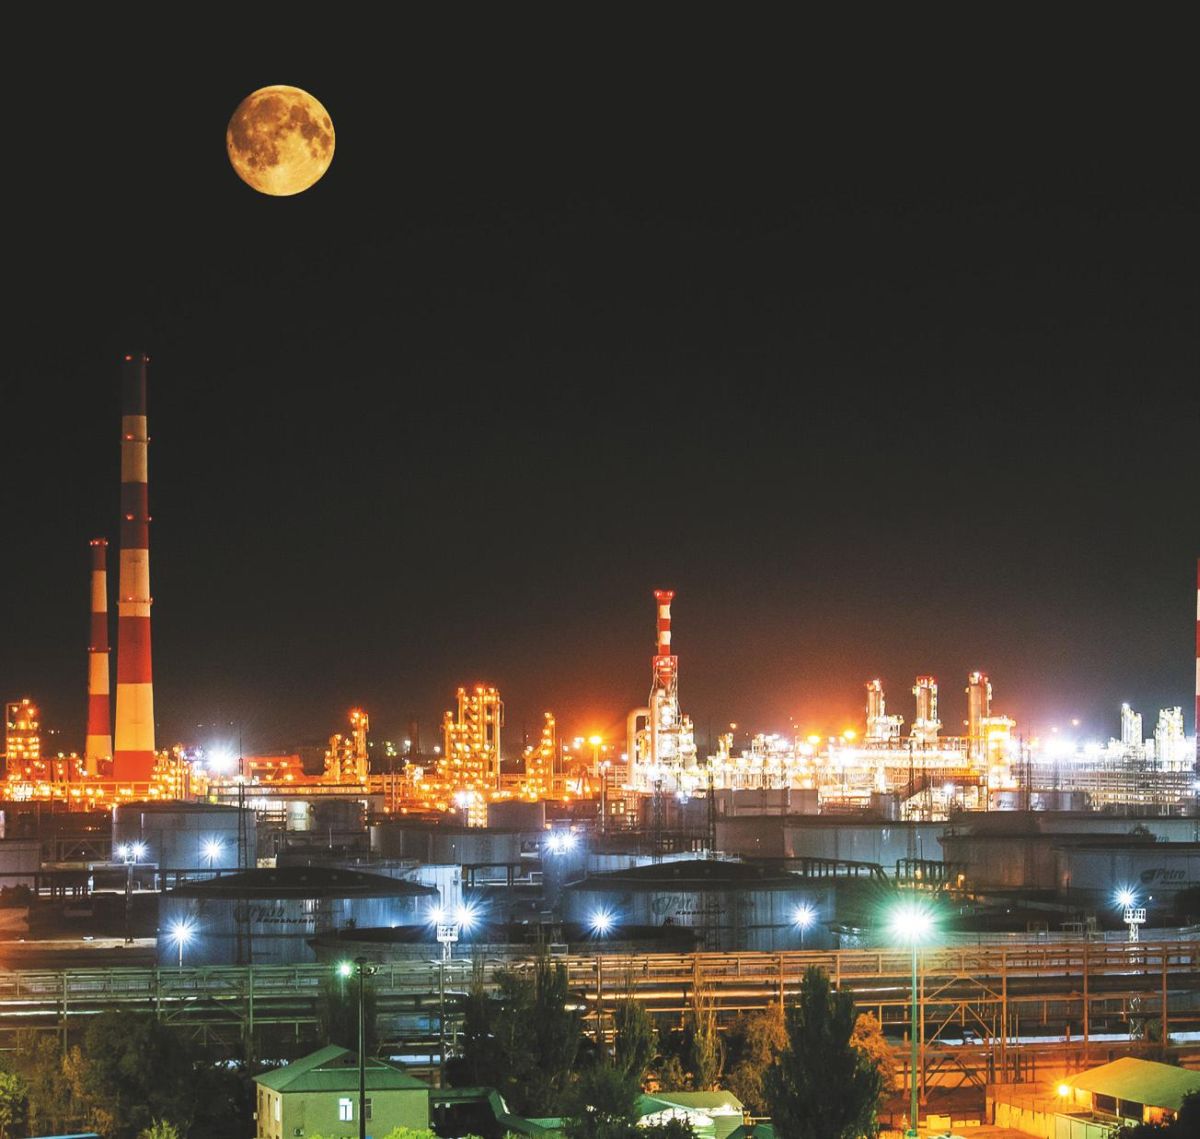 Shymkent Refinery